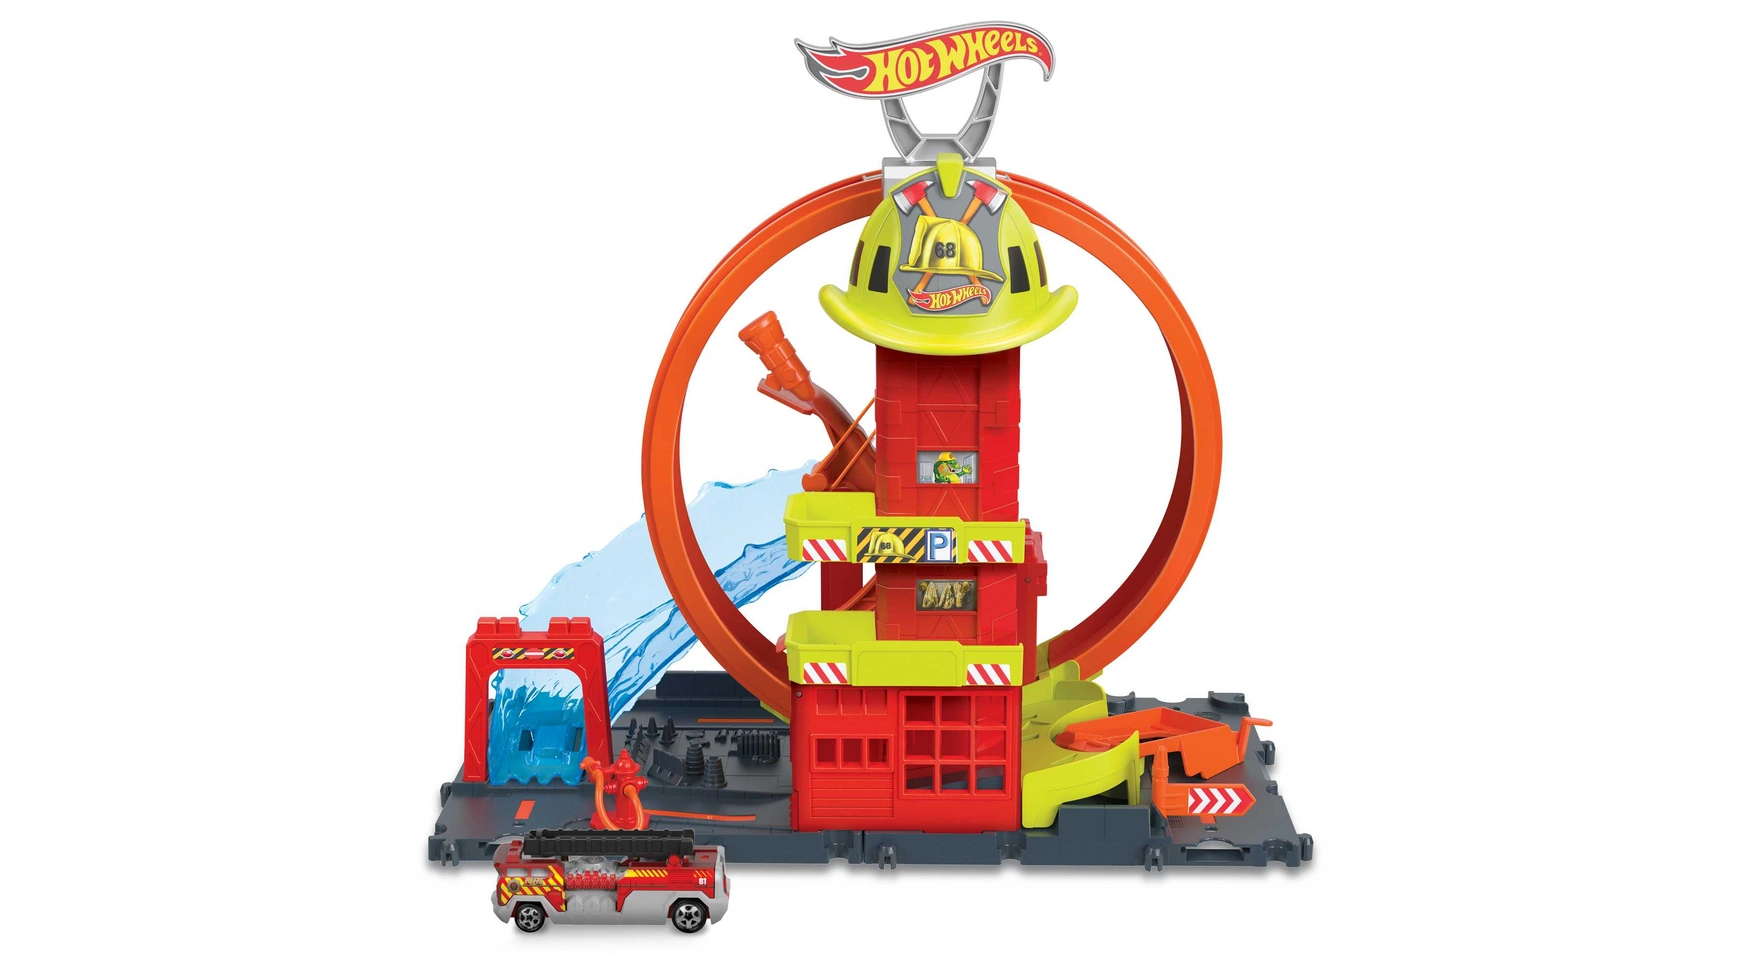 Hot wheels city super looping пожарная станция Mattel игровой набор городских трасс hot wheels сити